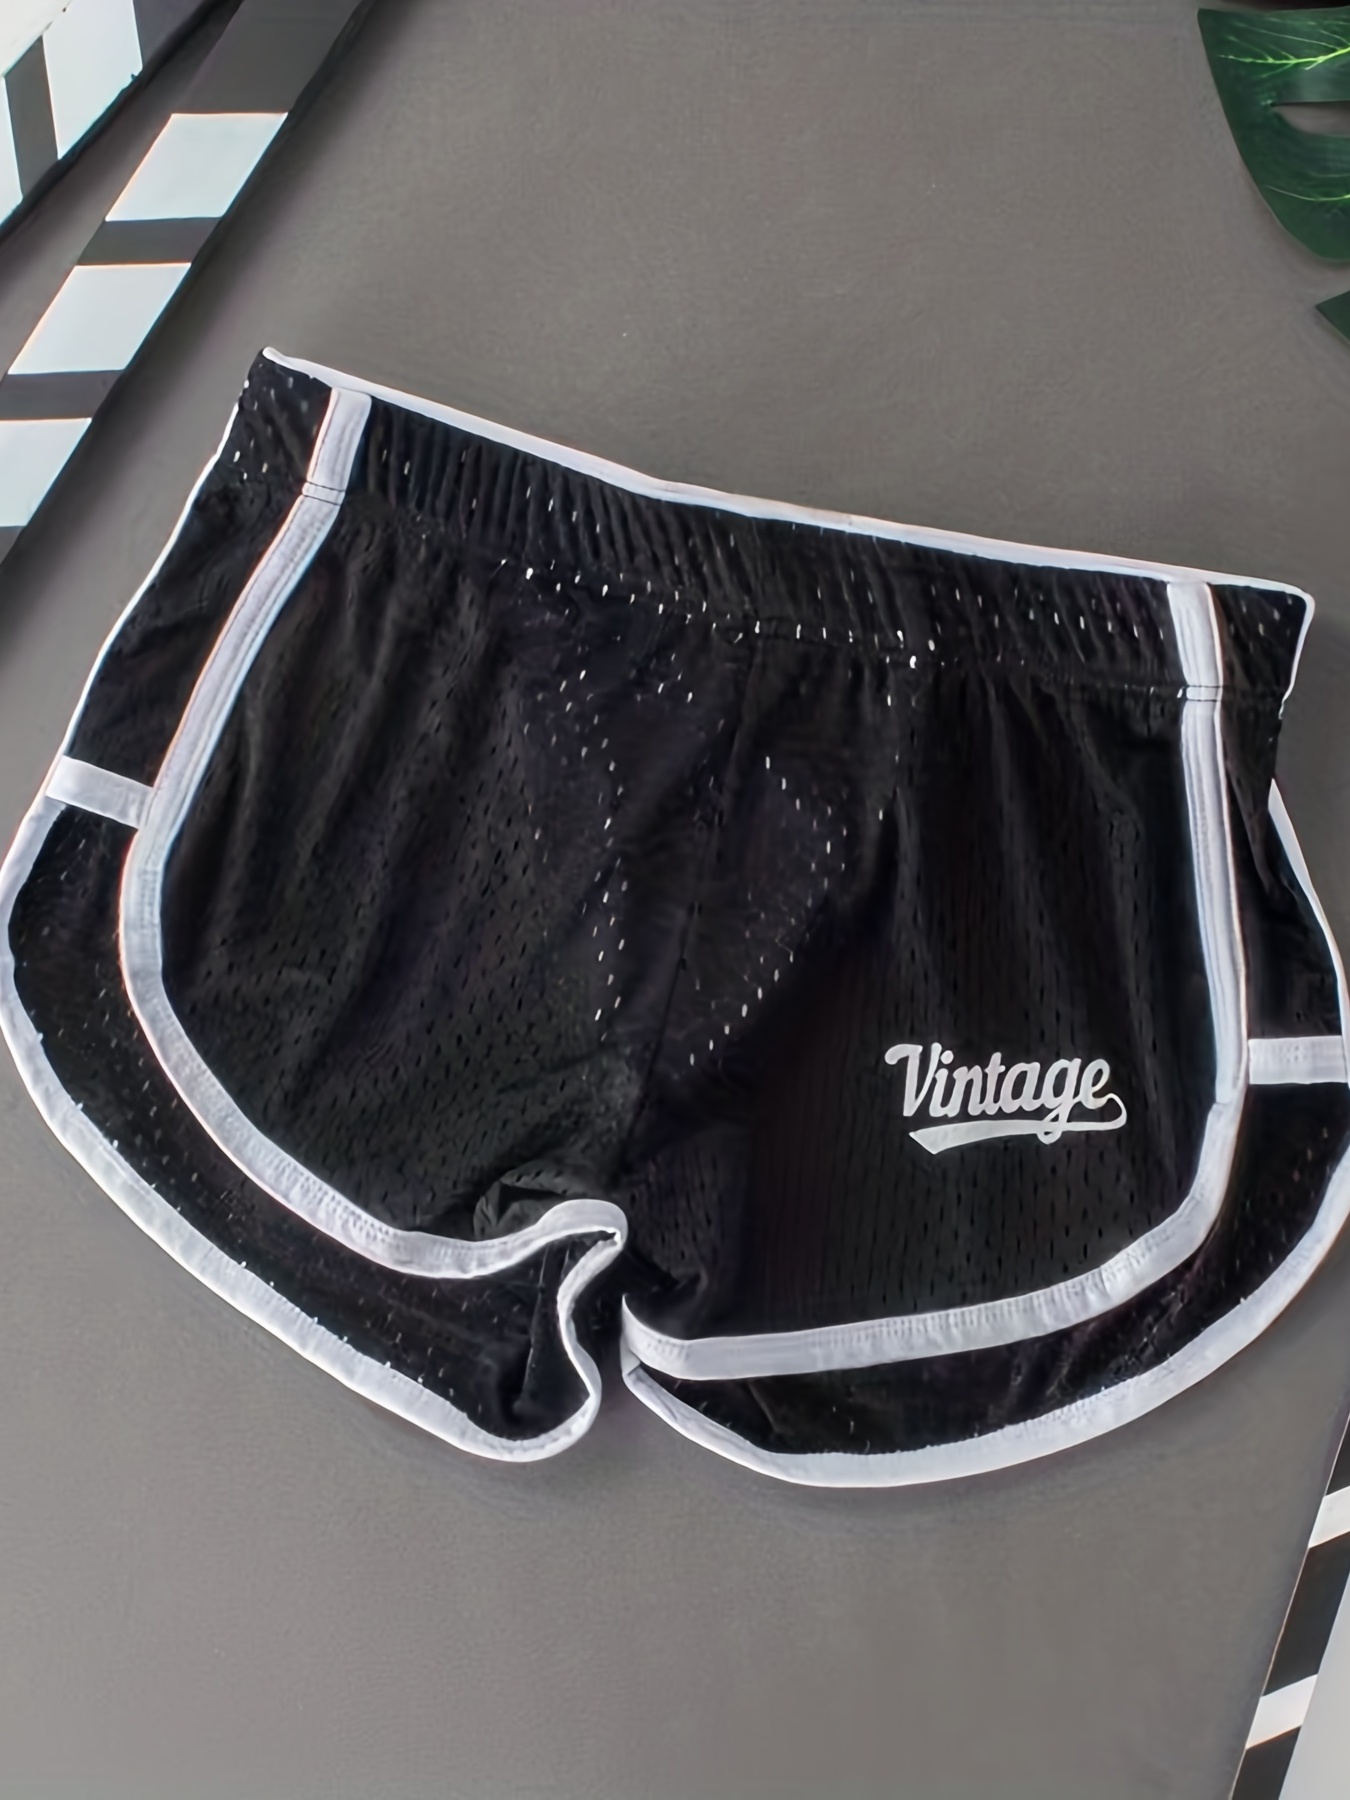 Trendy Men's Cotton Boxers Loose Fit Arrow Pants with Middle Waist Design